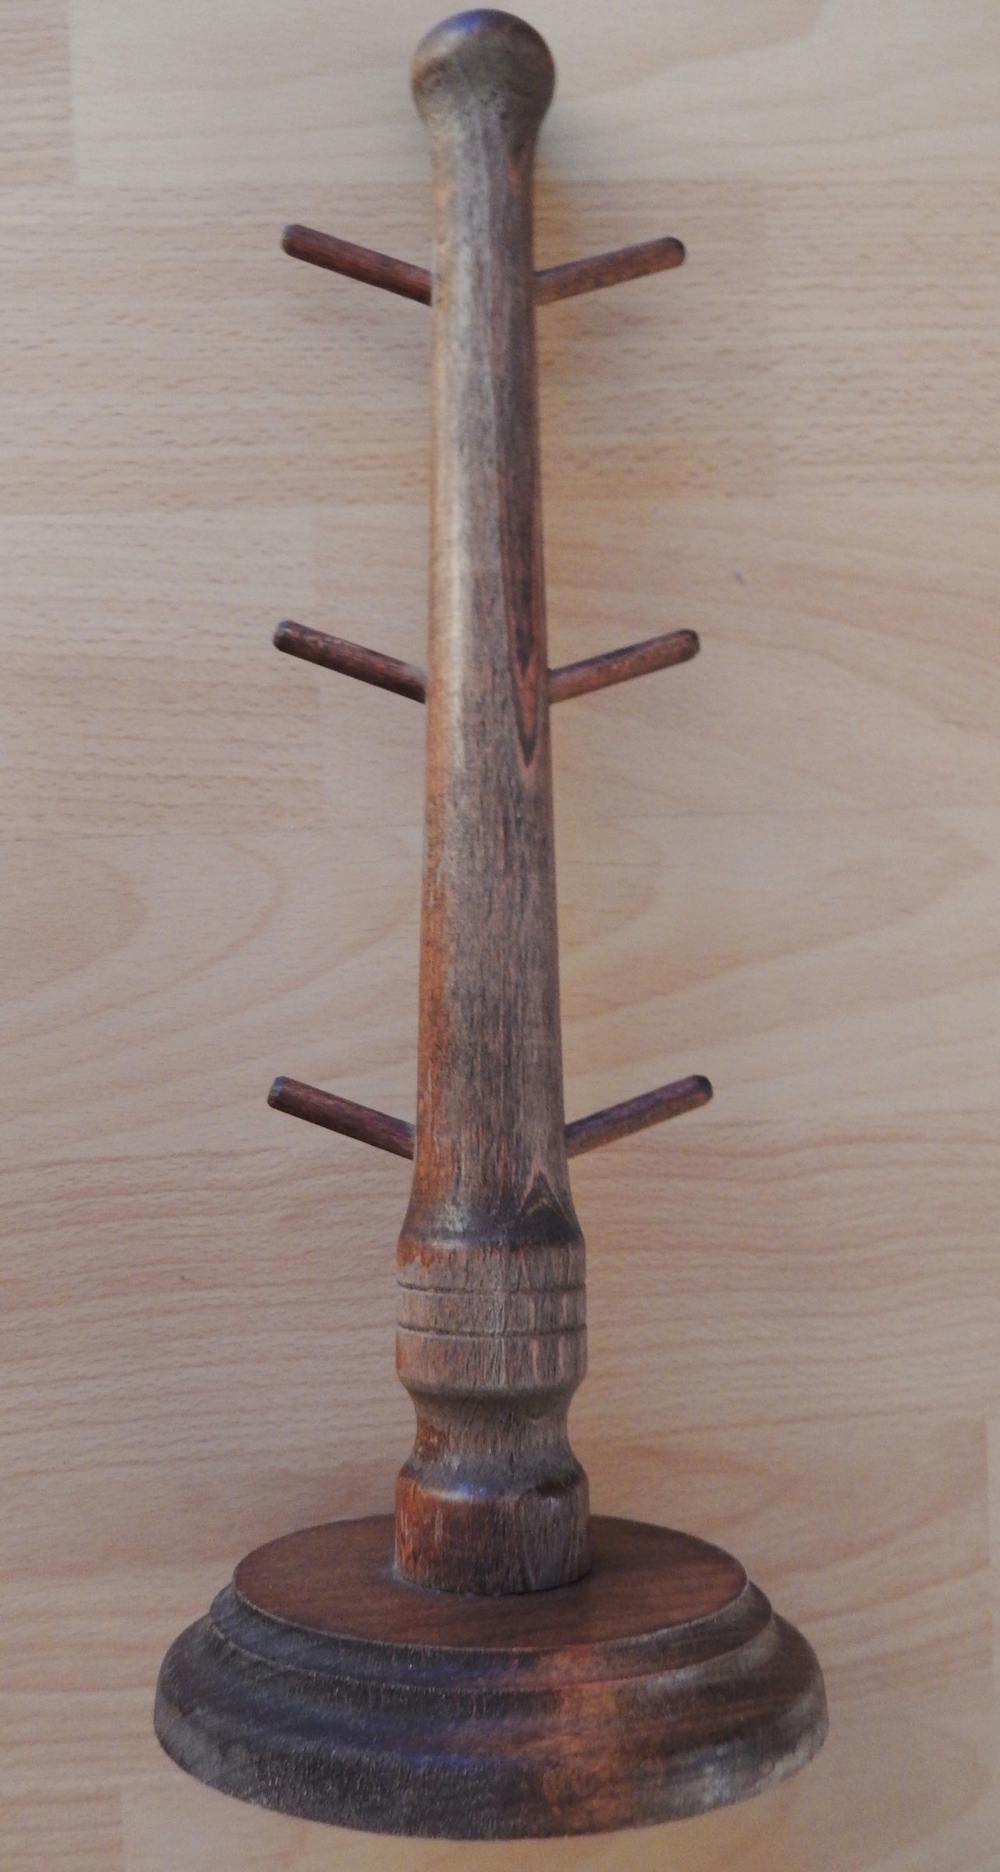 Holzständer mit Halterungen für Gläser (Stamper) ca. 31 cm hoch